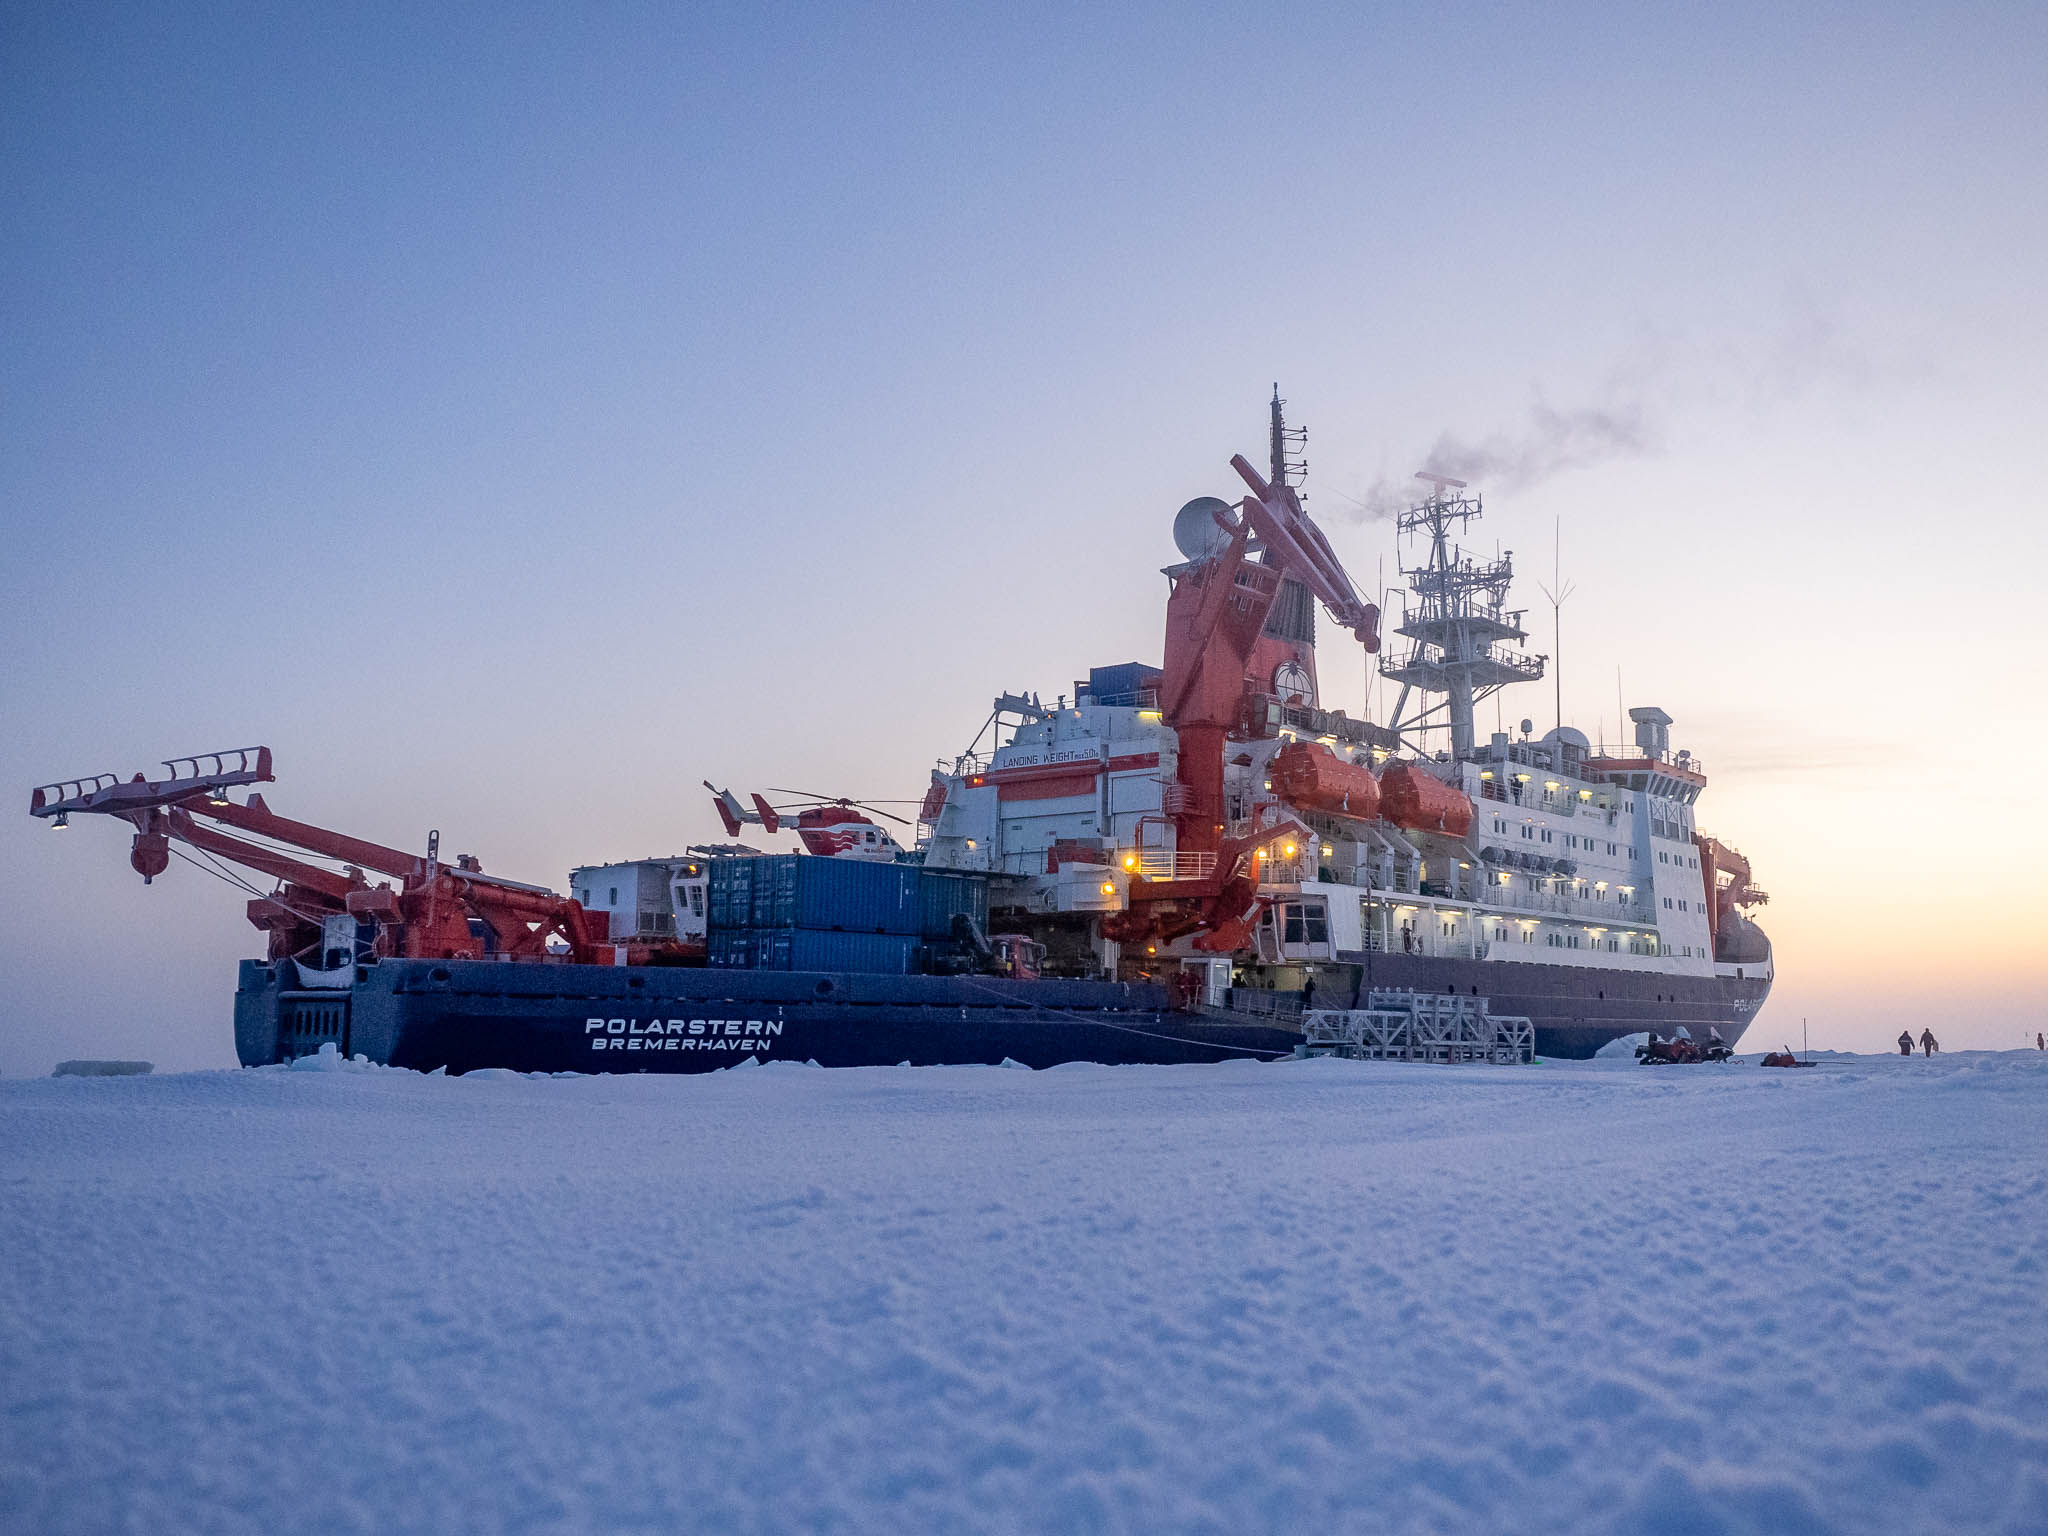 The Polarstern frozen in Arctic sea ice.